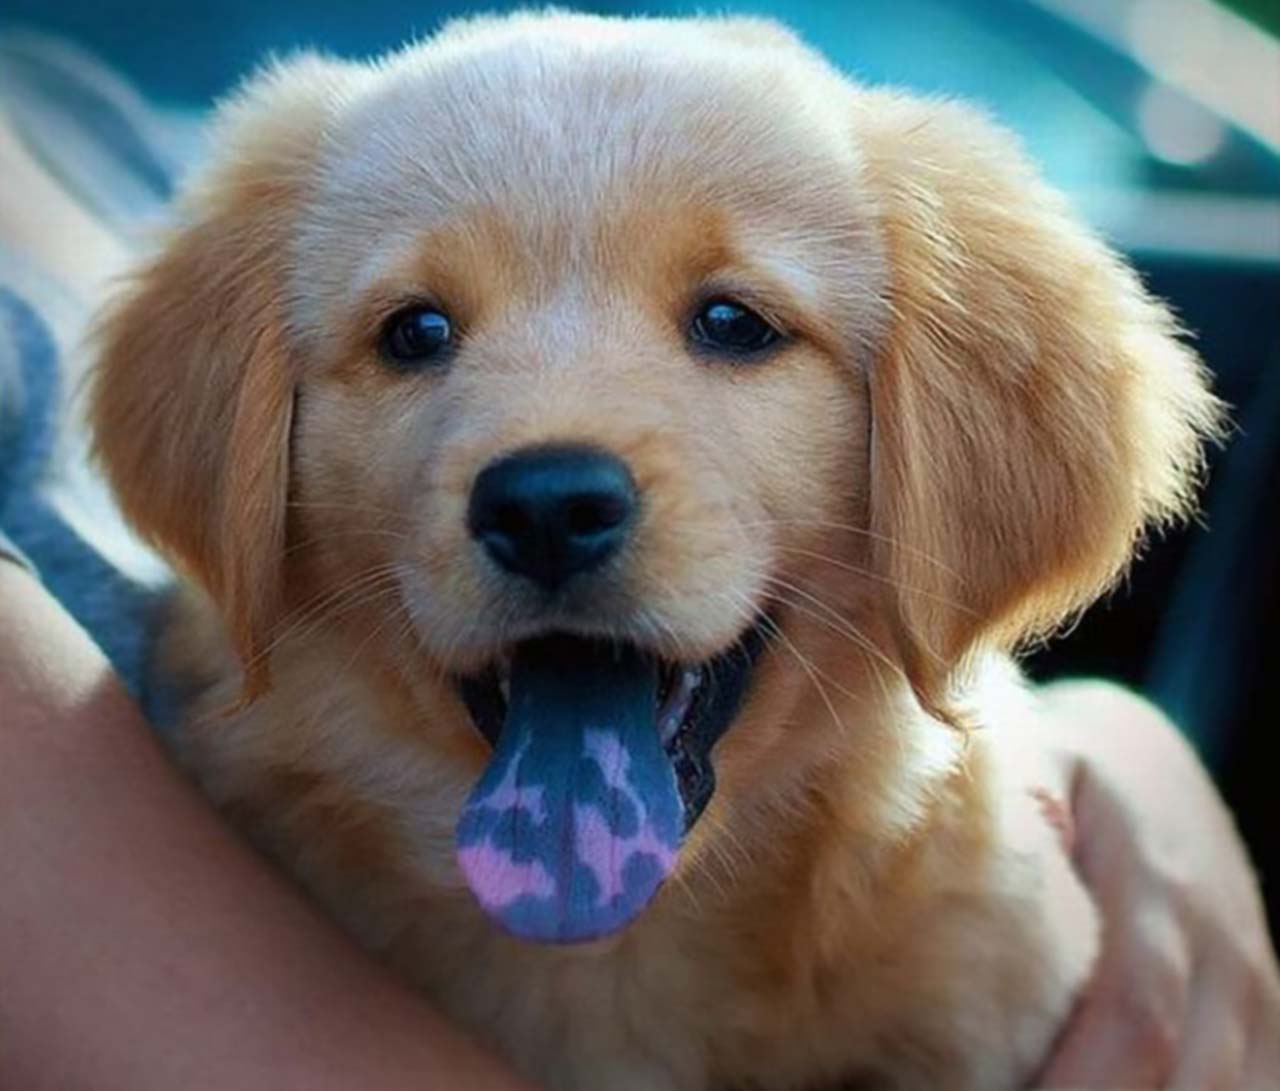 Chó đốm lưỡi: Bạn đã từng nghe về loại chó đốm lưỡi? Chúng có một nét đặc biệt là lưỡi đen đốm trắng, rất đáng yêu và dễ thương. Hãy xem những hình ảnh với loài chó này để tận hưởng vẻ đẹp dễ thương của chúng.